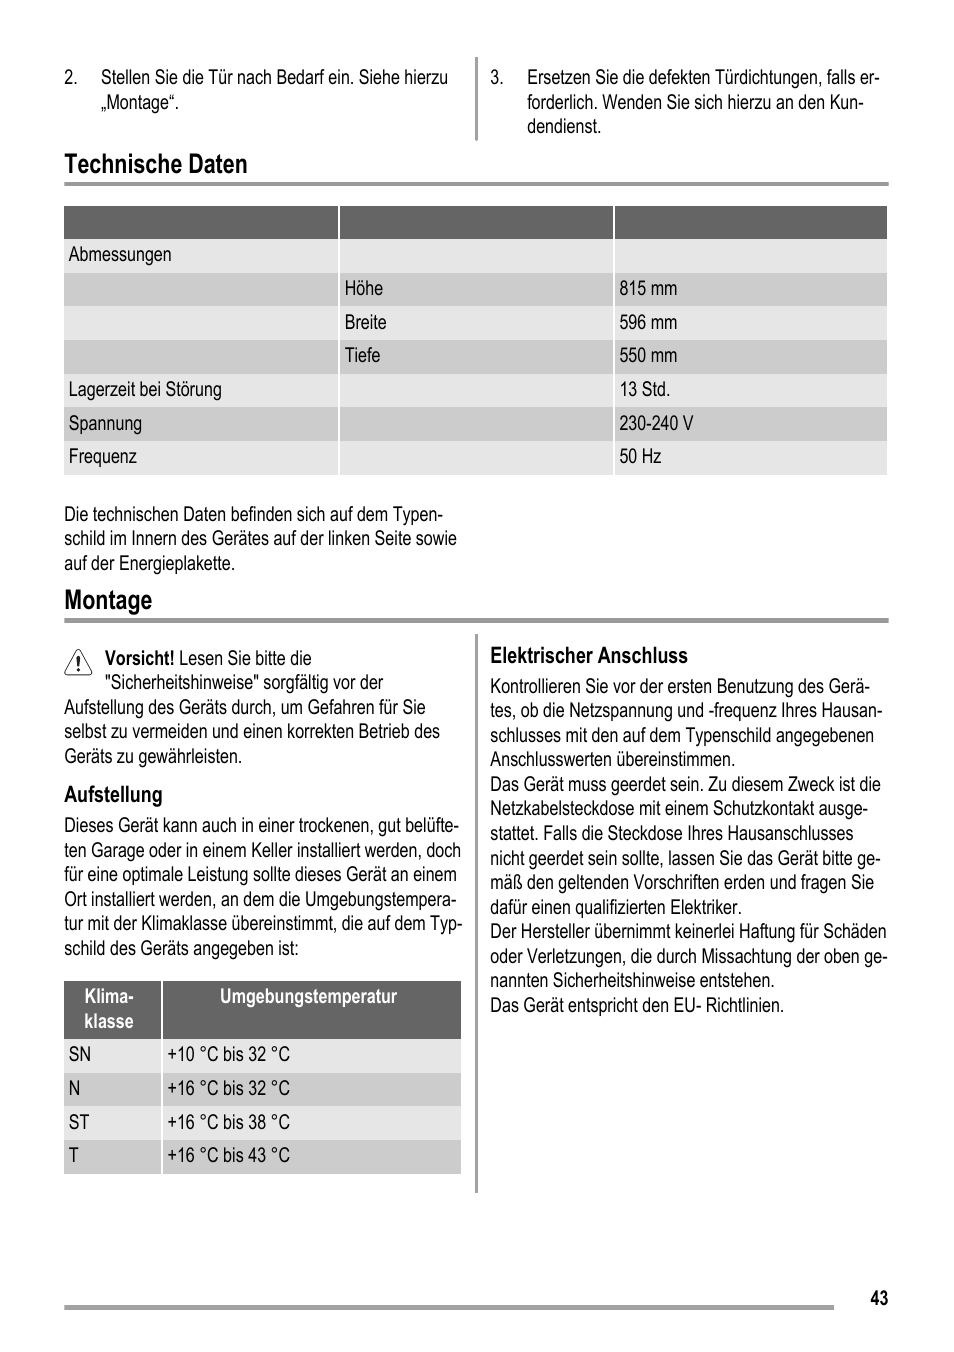 Technische daten, Montage | ZANKER KBU 12401 DK User Manual | Page 43 / 48